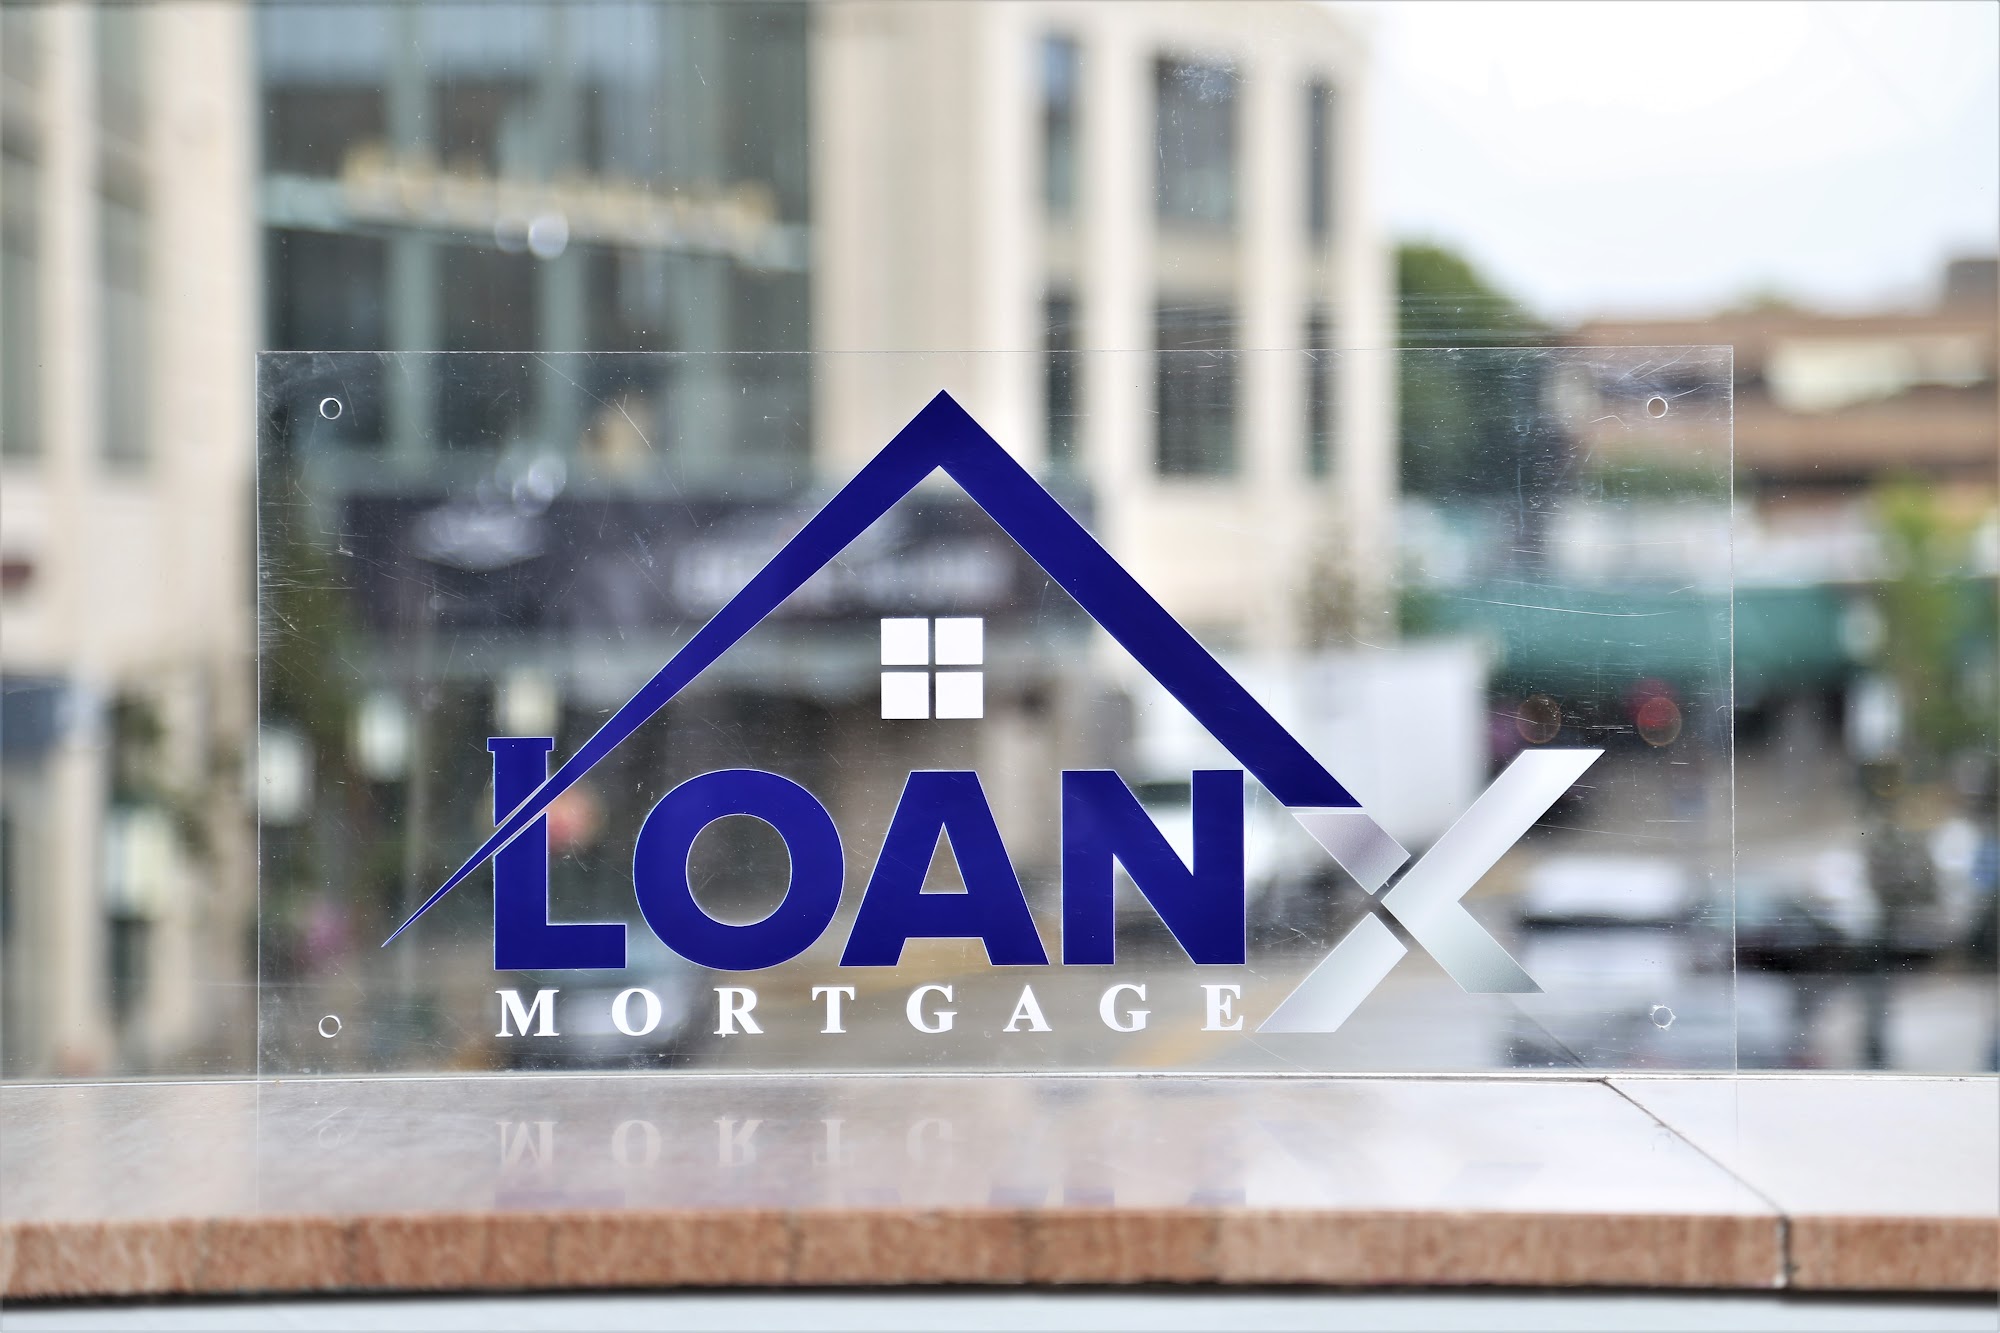 Loan X Mortgage